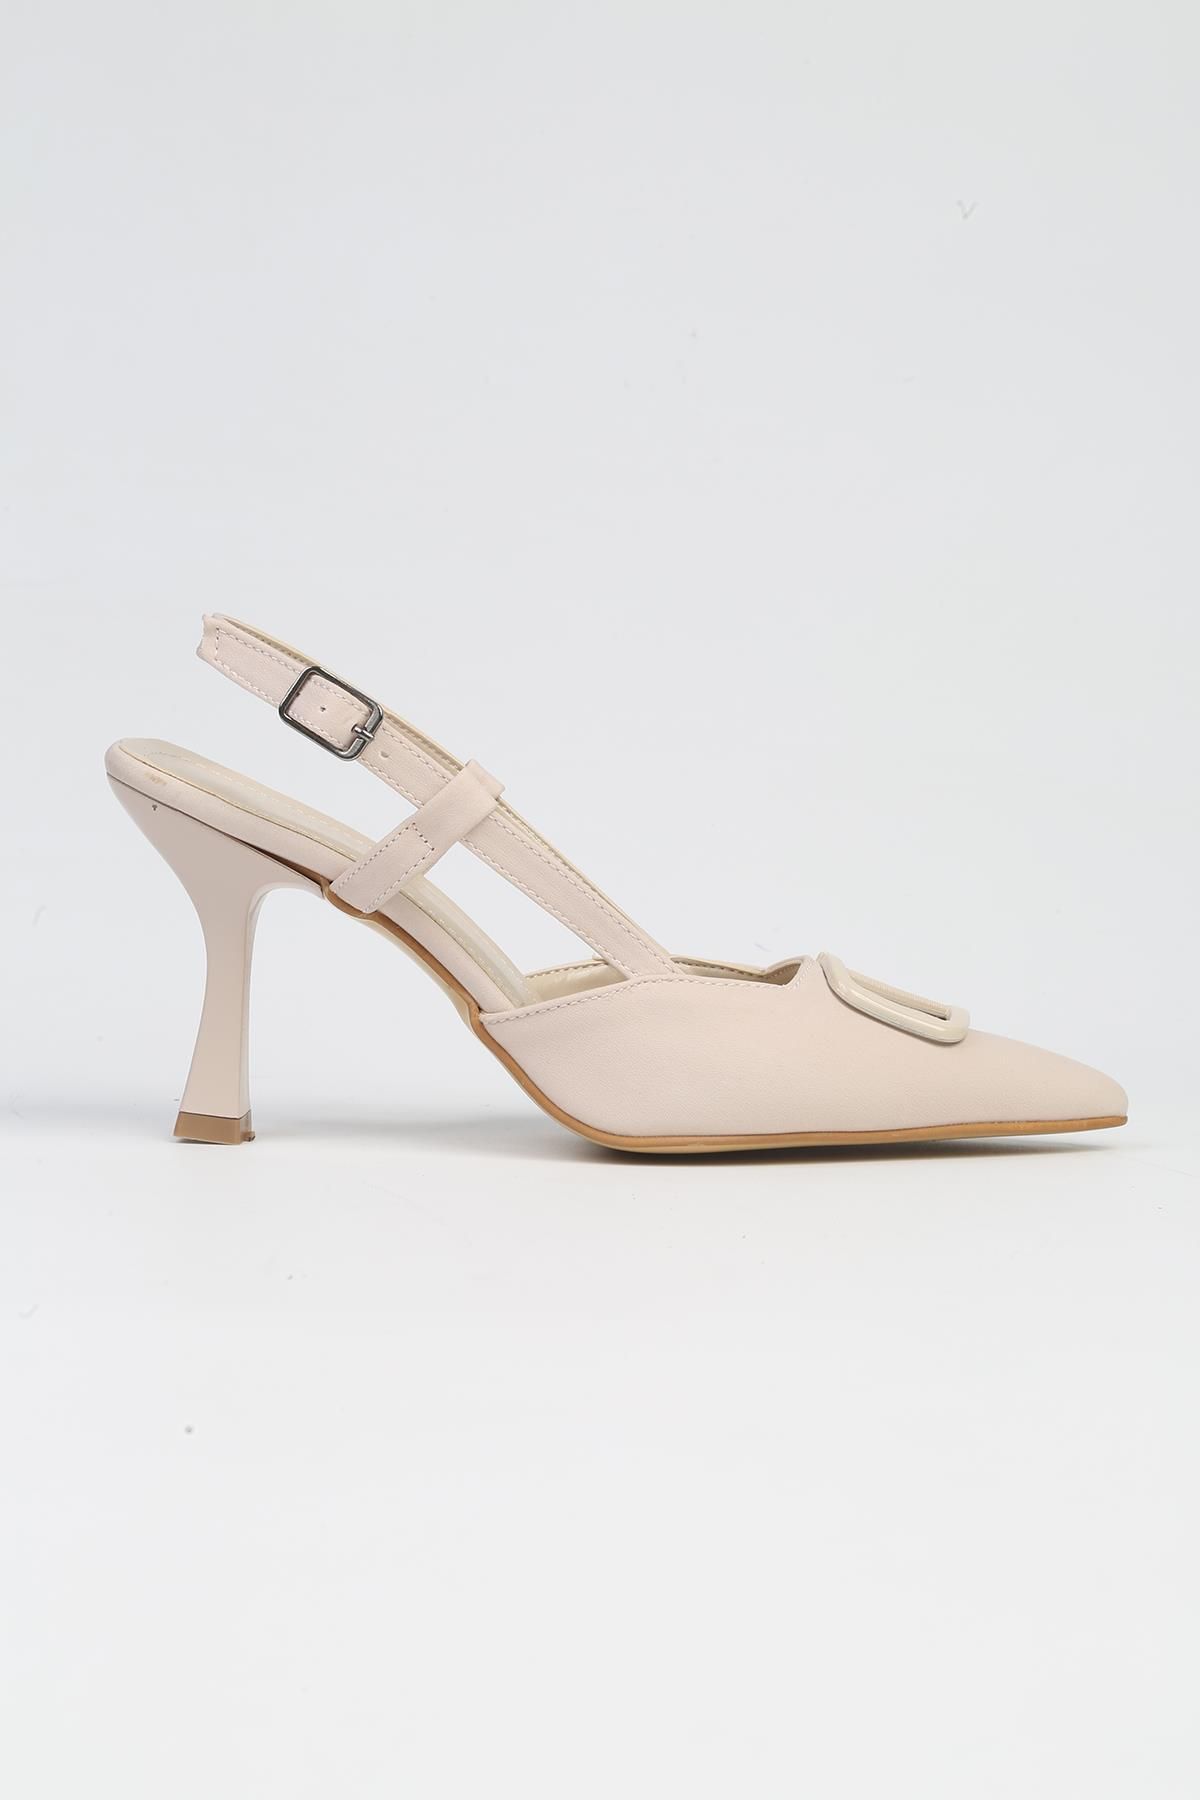 Pierre Cardin ® | PC-53005- 3691 Krem-Kadın Topuklu Ayakkabı